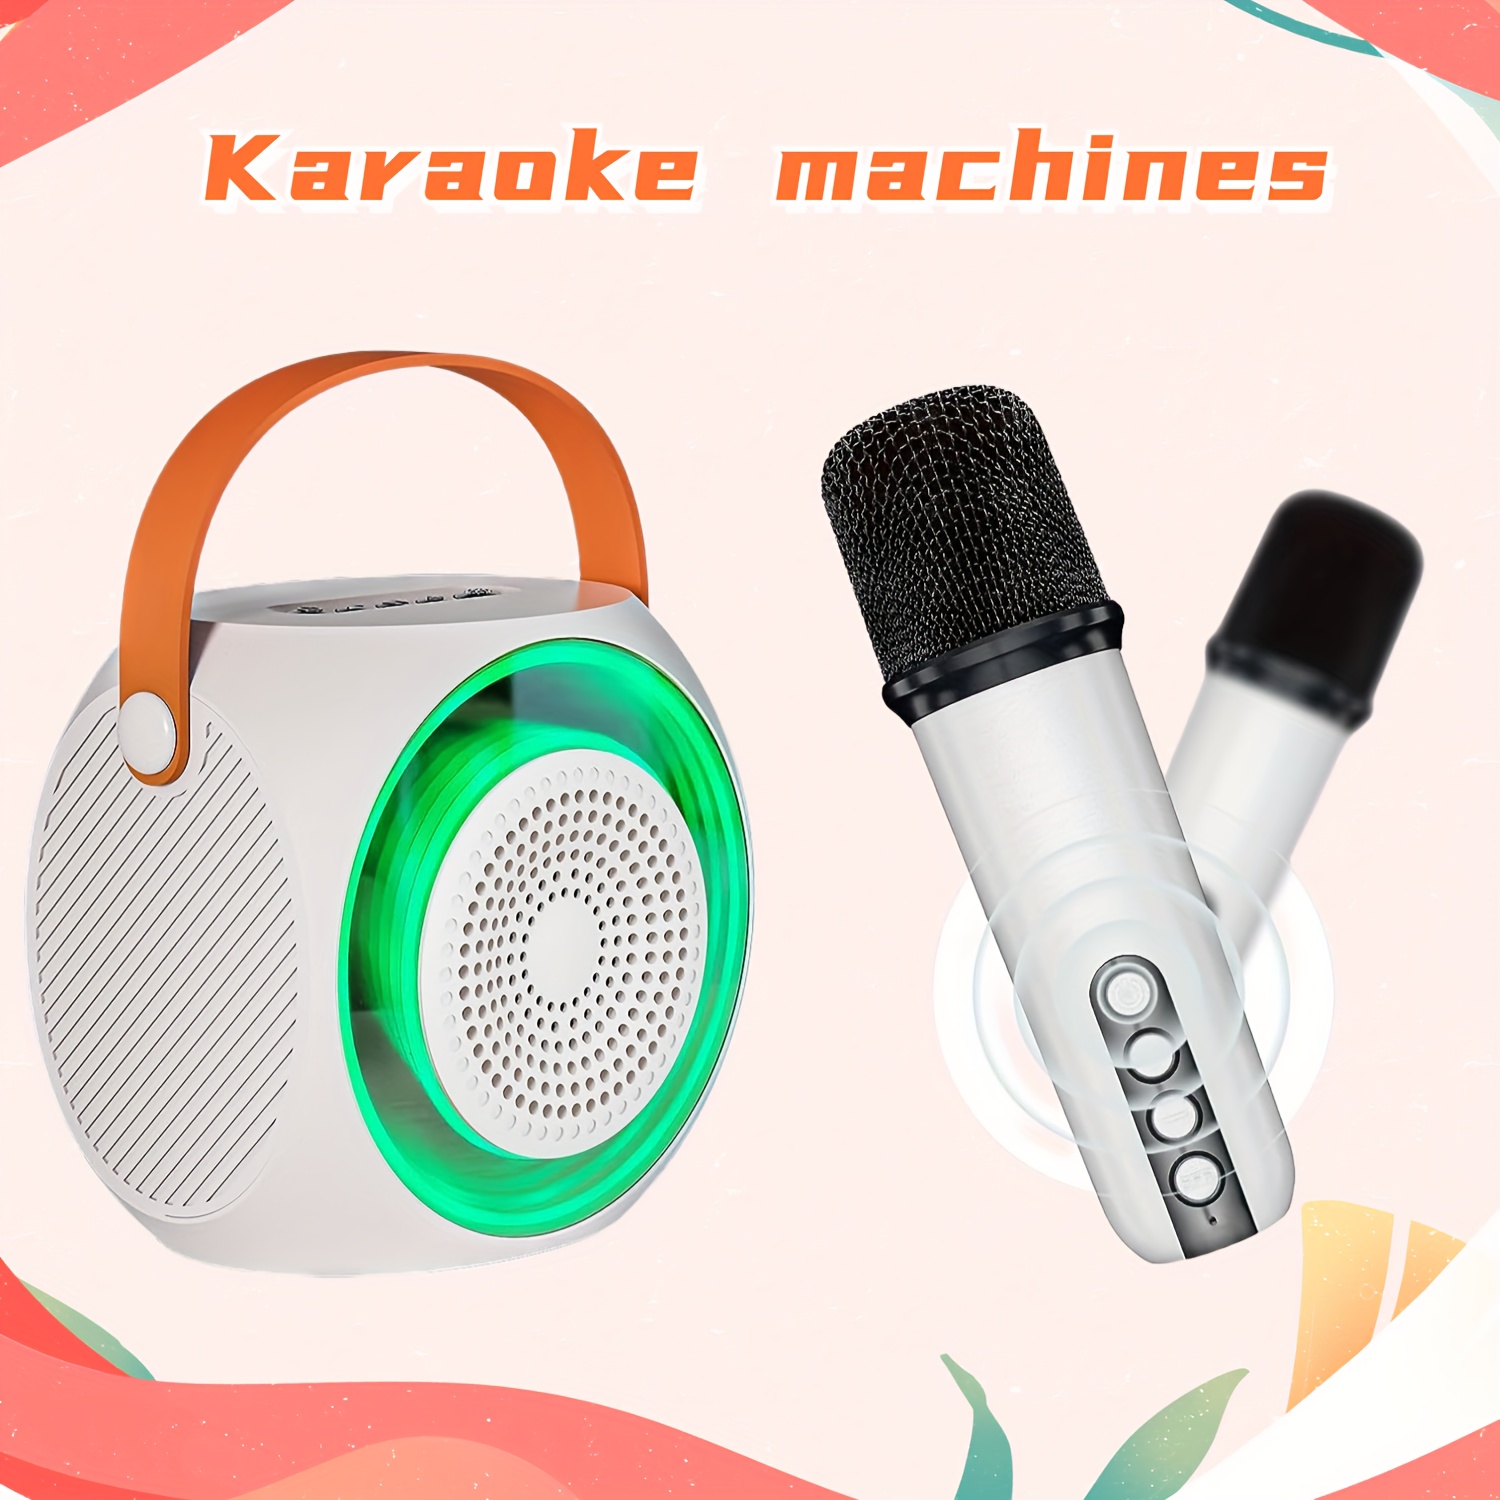  Máquina de karaoke de juguete para niños y micrófono de karaoke  para automóvil, altavoz Bluetooth portátil con micrófono inalámbrico,  combinación de micrófono familiar y infantil, regalos para niñas, niños y  adultos